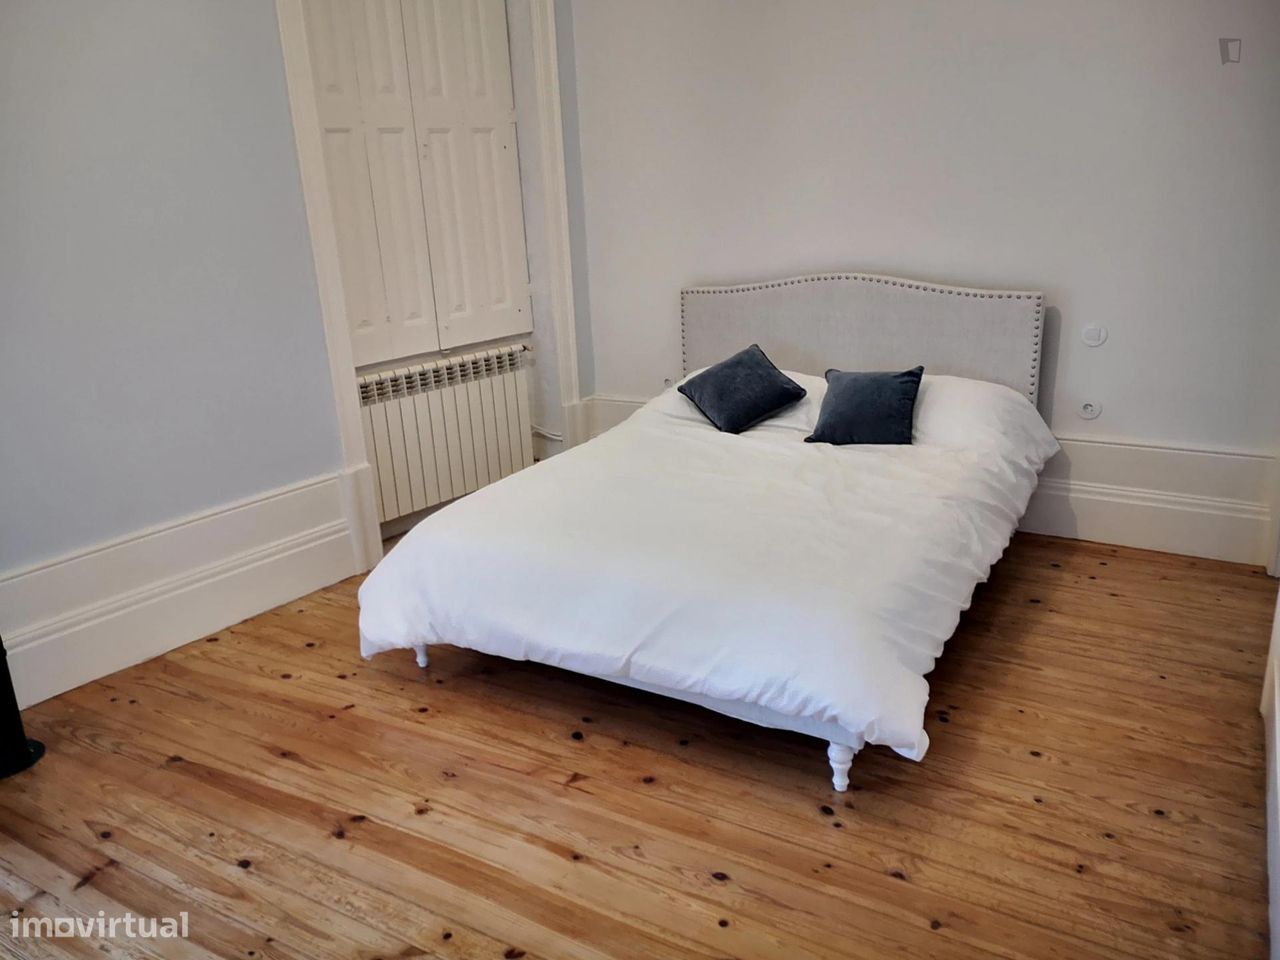 639731 - Bedroom in Porto Vintage Retreat...